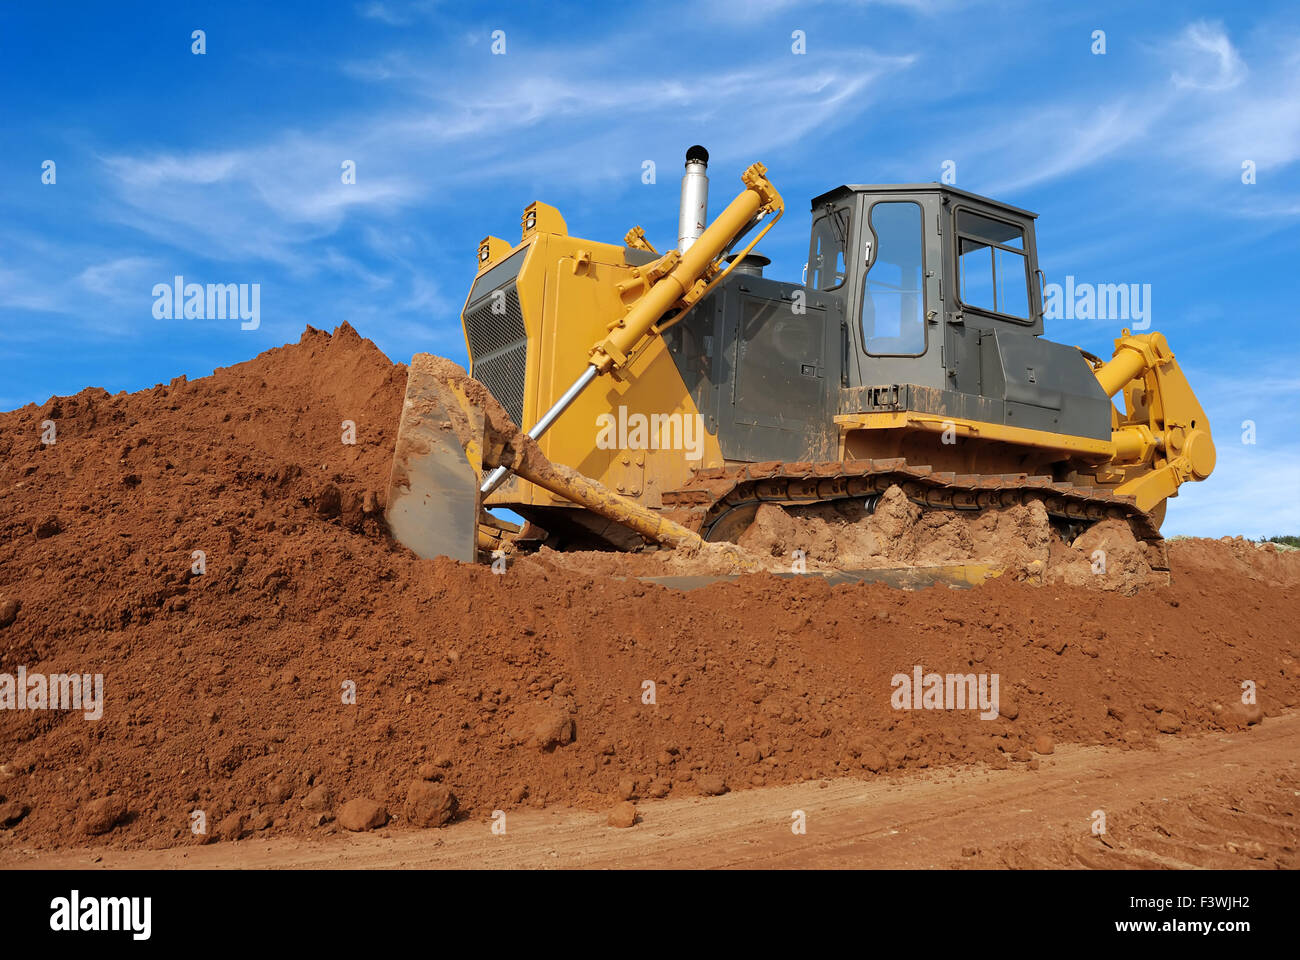 heavy bulldozer moving sand in sandpit Stock Photo